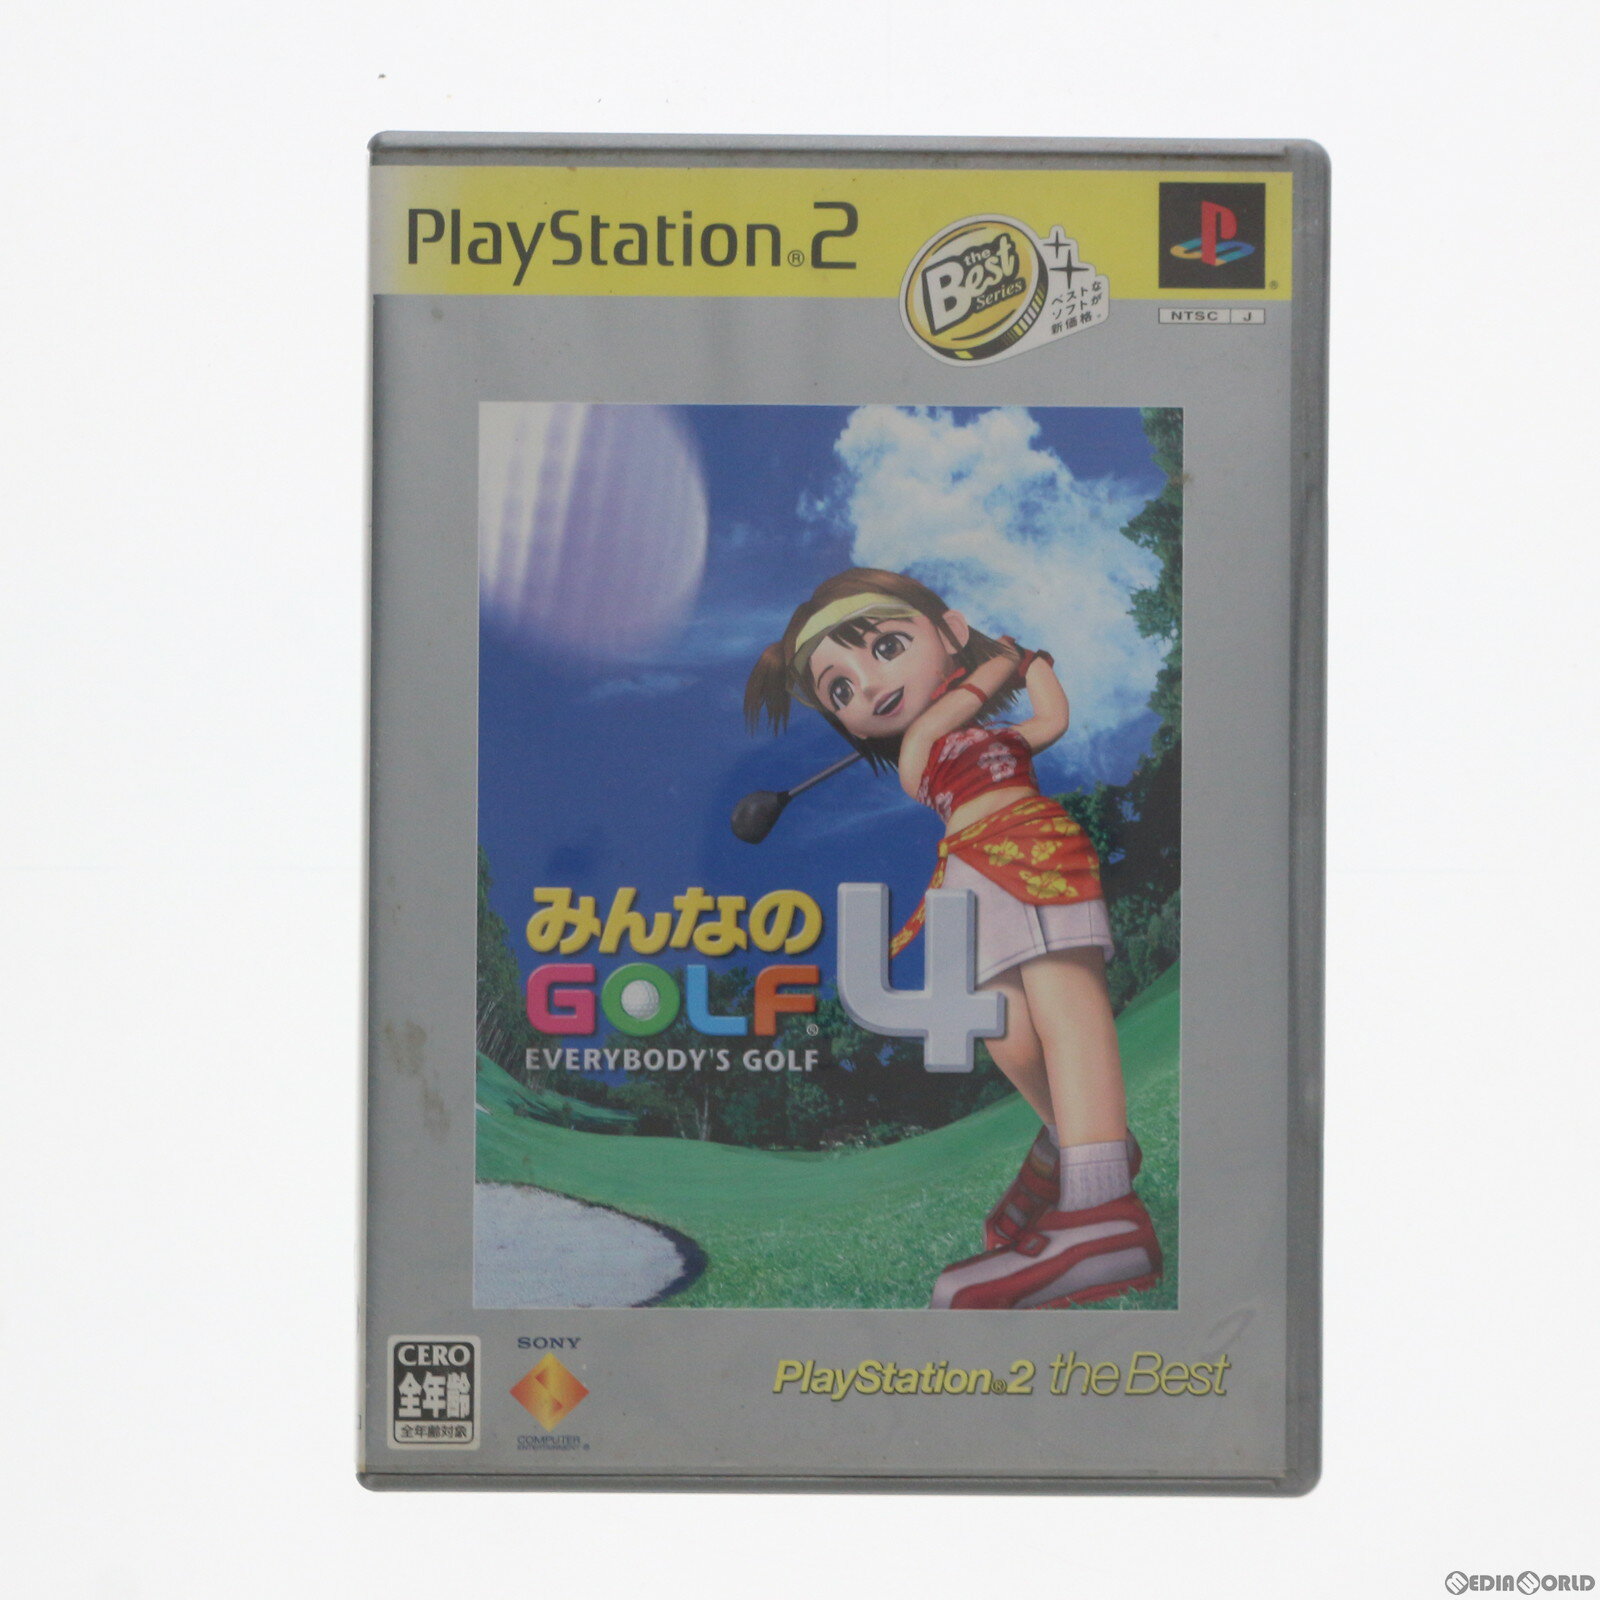 【中古】[PS2]みんなのGOLF4 PlayStation 2 the Best SCPS-19301 20040708 